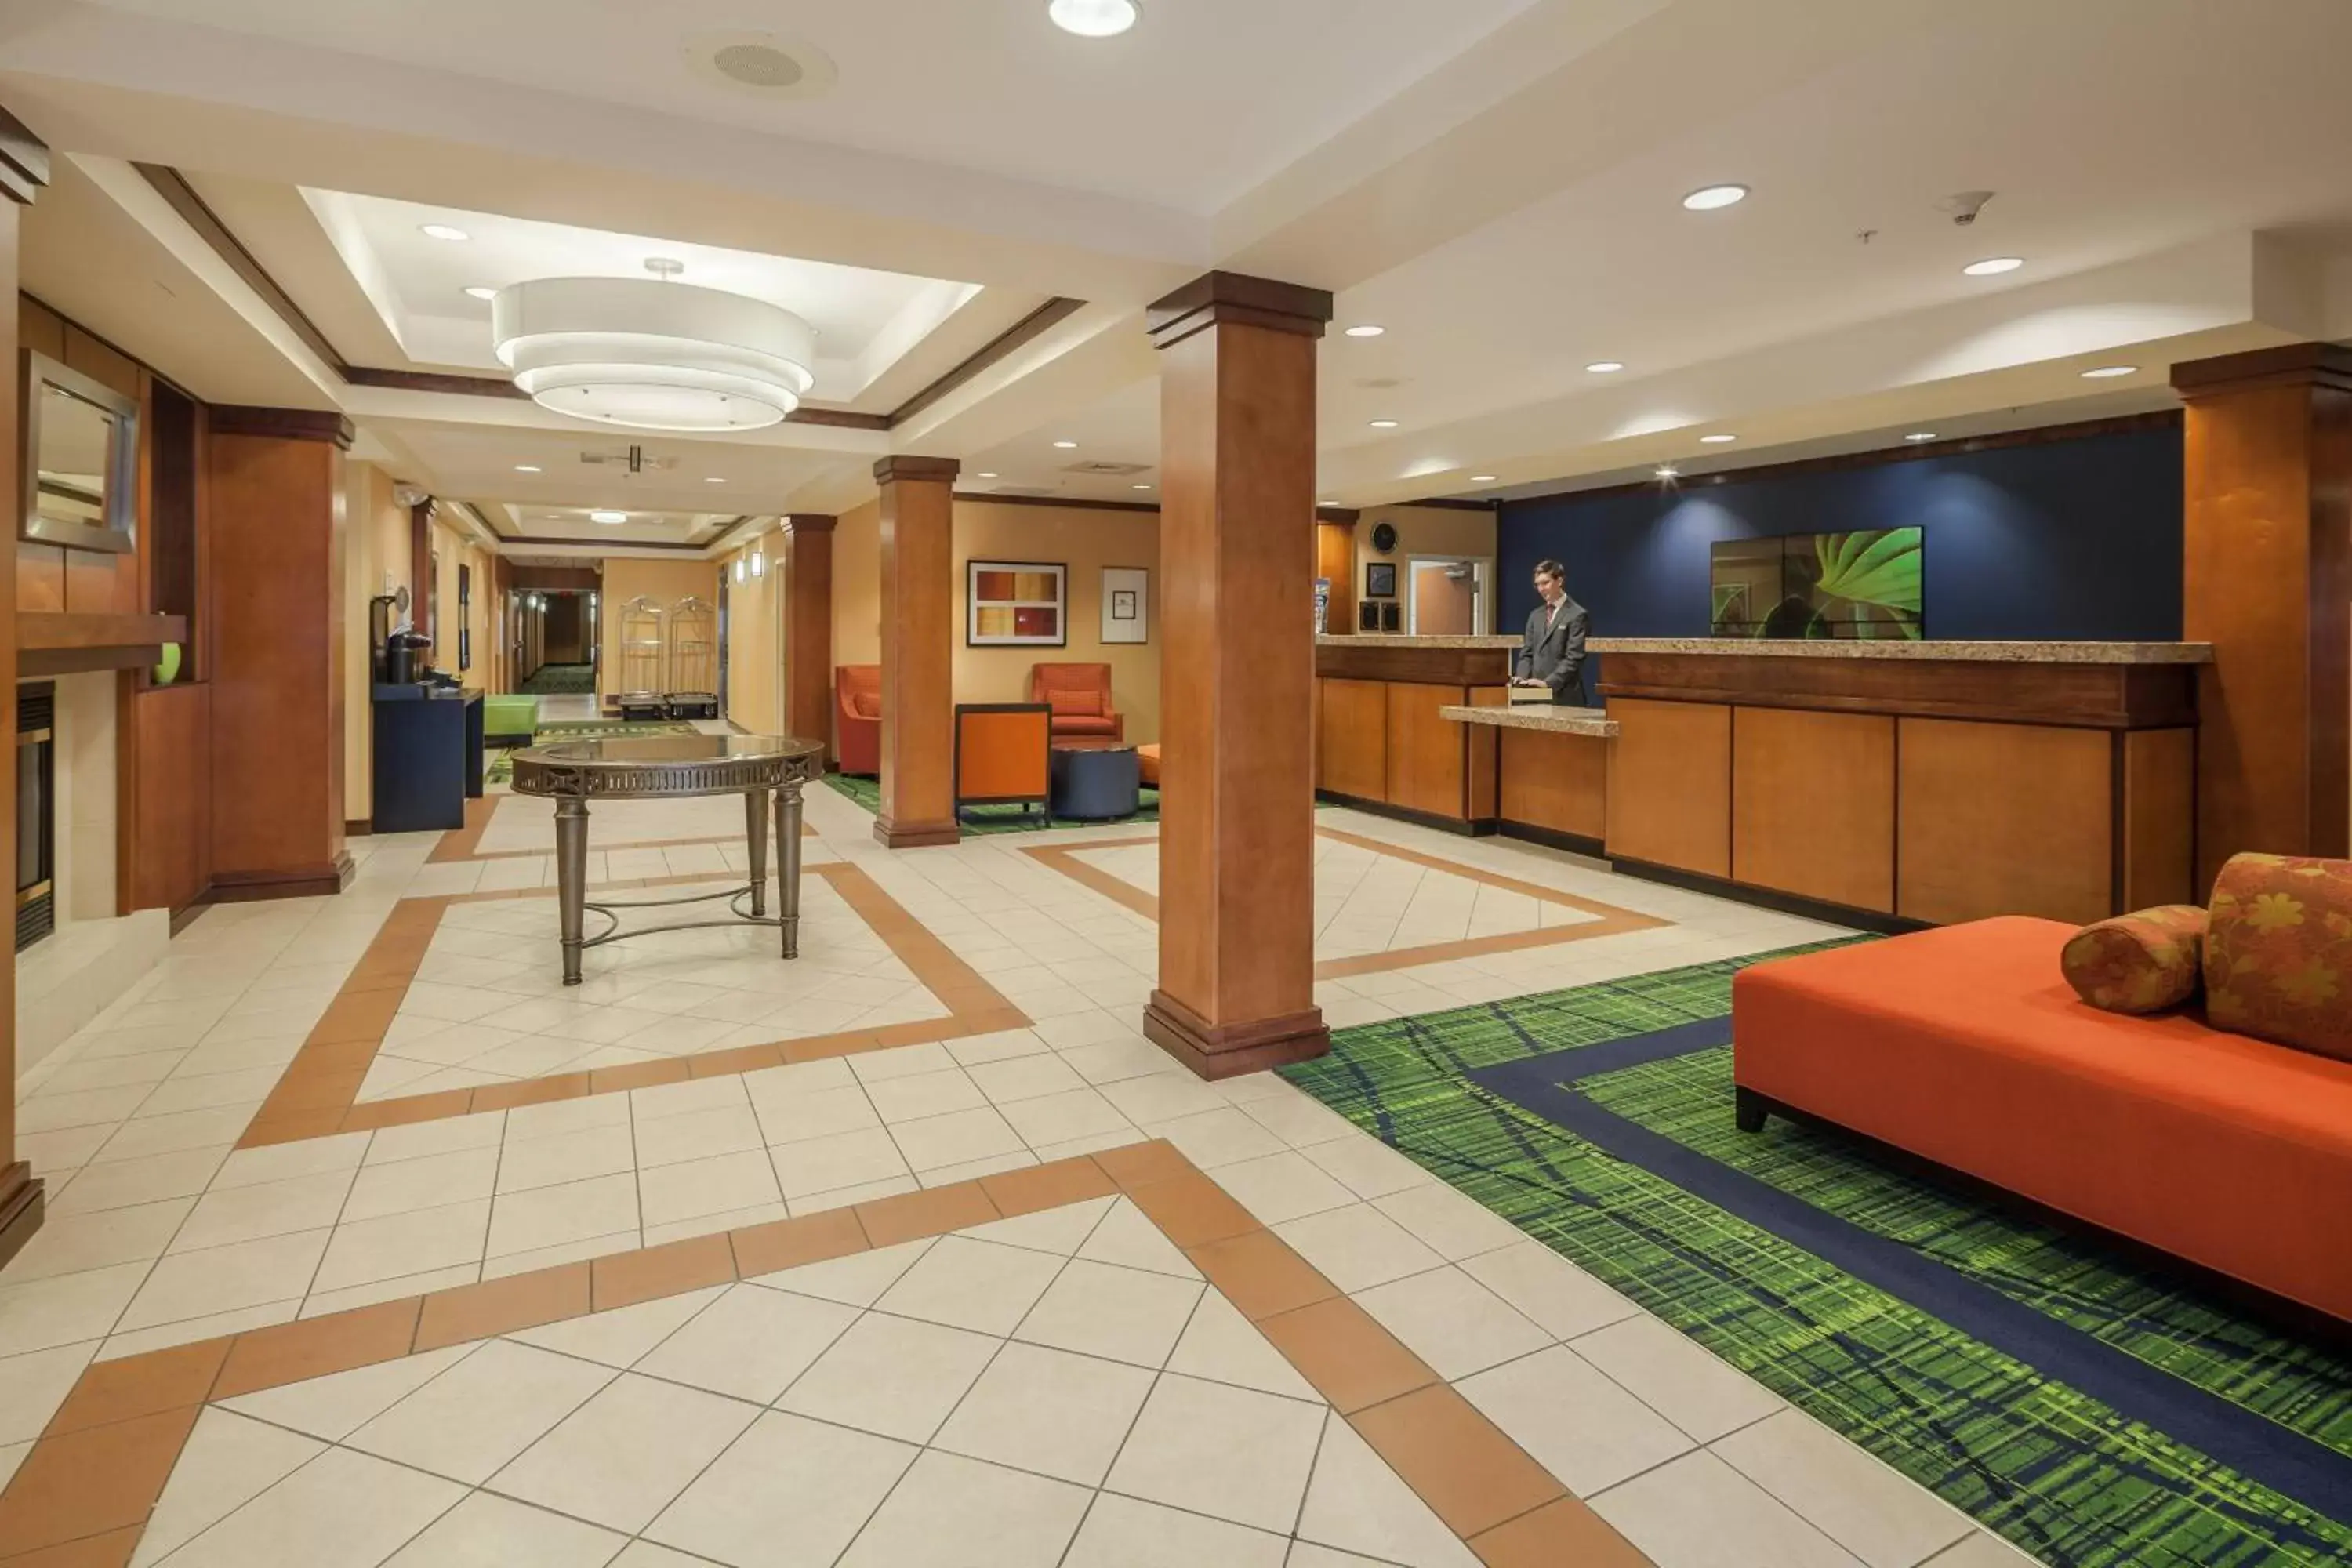 Lobby or reception, Lobby/Reception in Fairfield Inn and Suites Jacksonville Beach